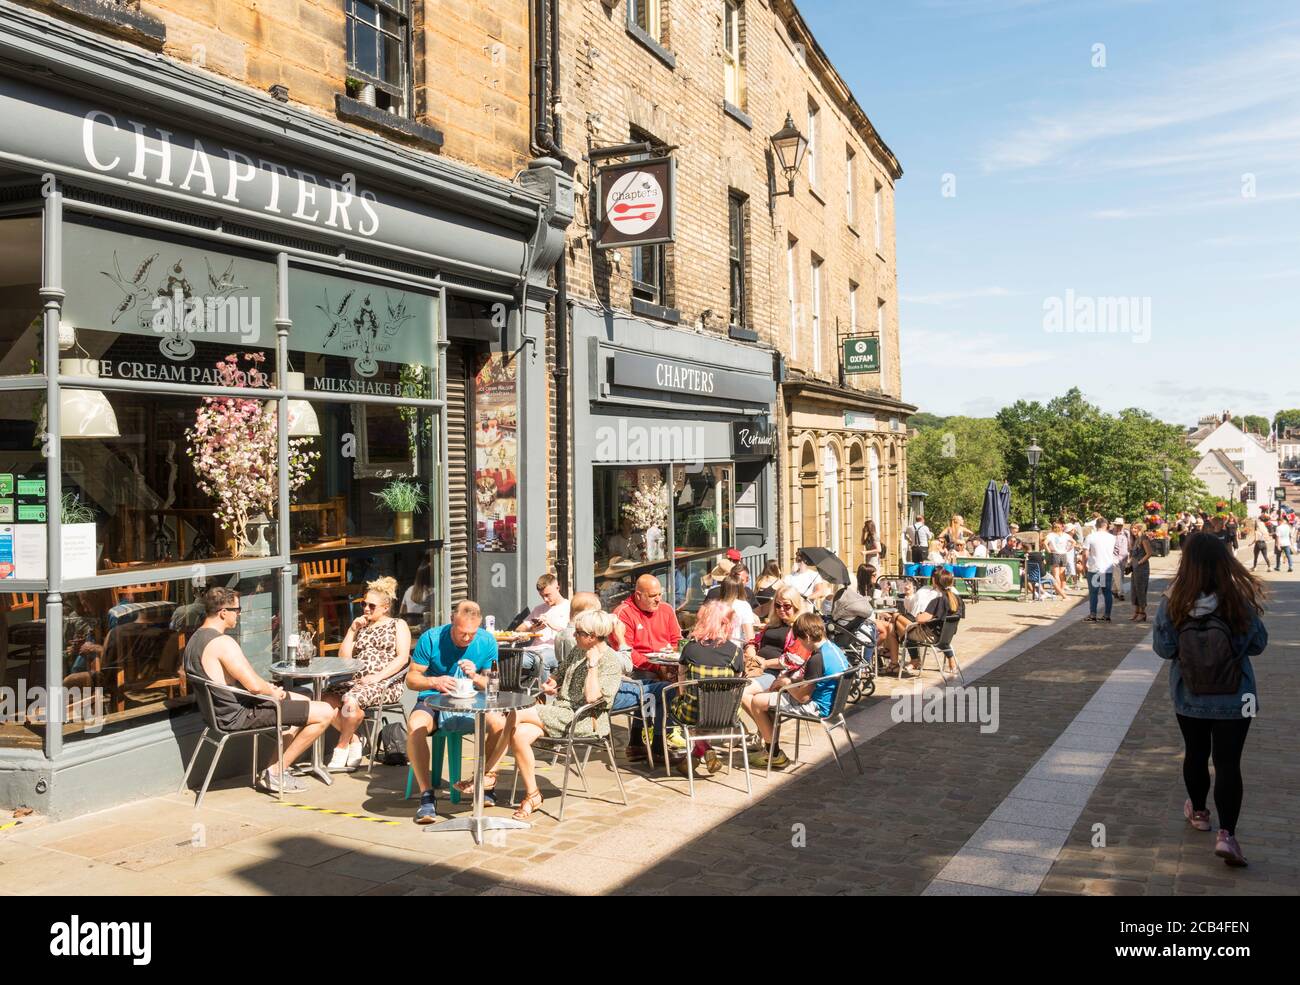 Les gens assis à l'extérieur de Chapters salon de thé et restaurant dans la ville de Durham, Angleterre, Royaume-Uni Banque D'Images